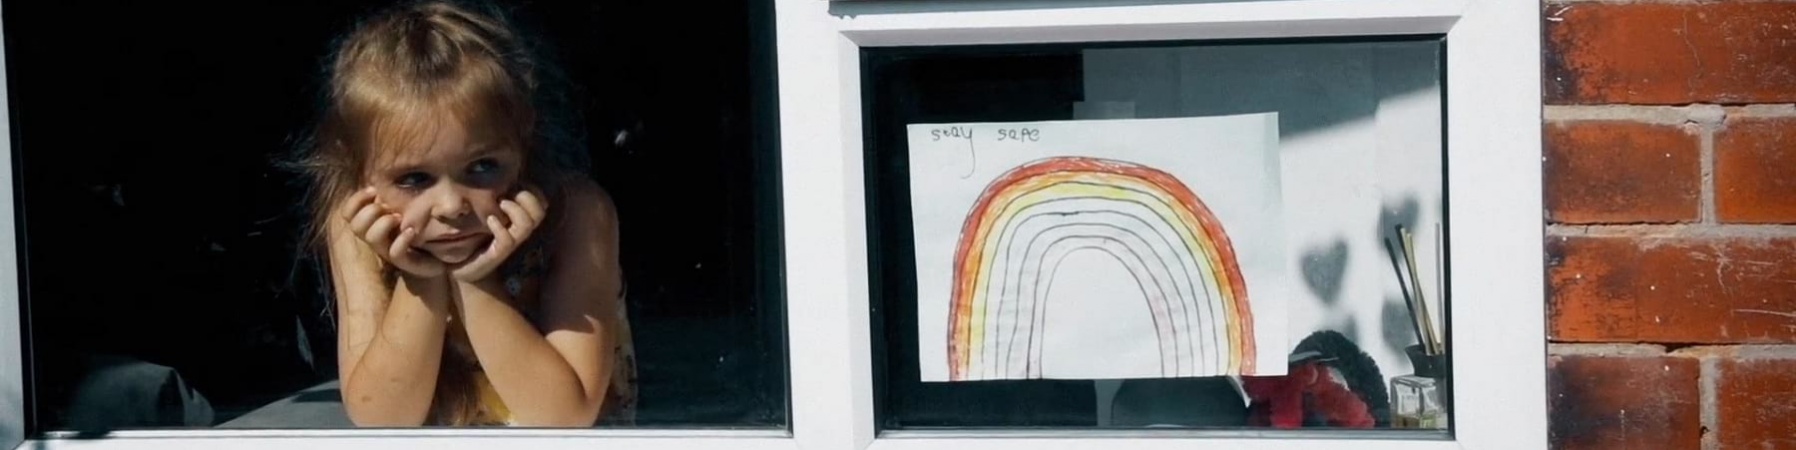 una bambina affacciata alla finestra guarda in basso pensosa. Sulla destra è appeso alla finestra il disegno di un arcobaleno